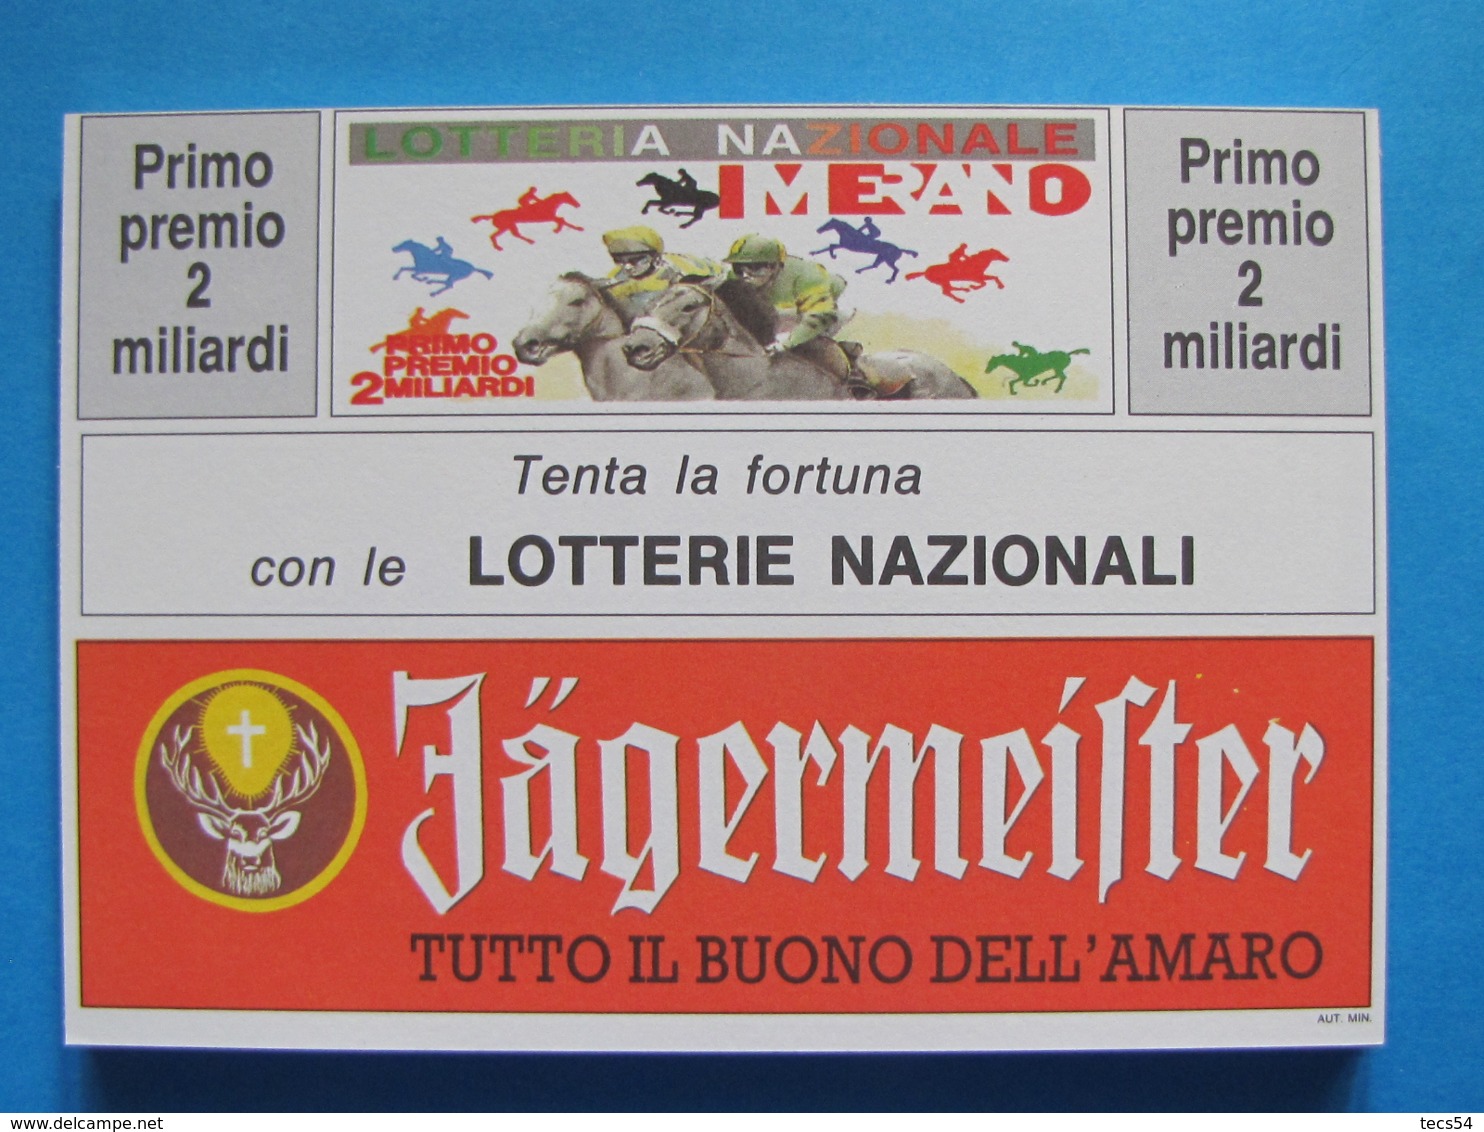 CARTOLINA LOTTERIA NAZIONALE MERANO 1992 - Biglietti Della Lotteria